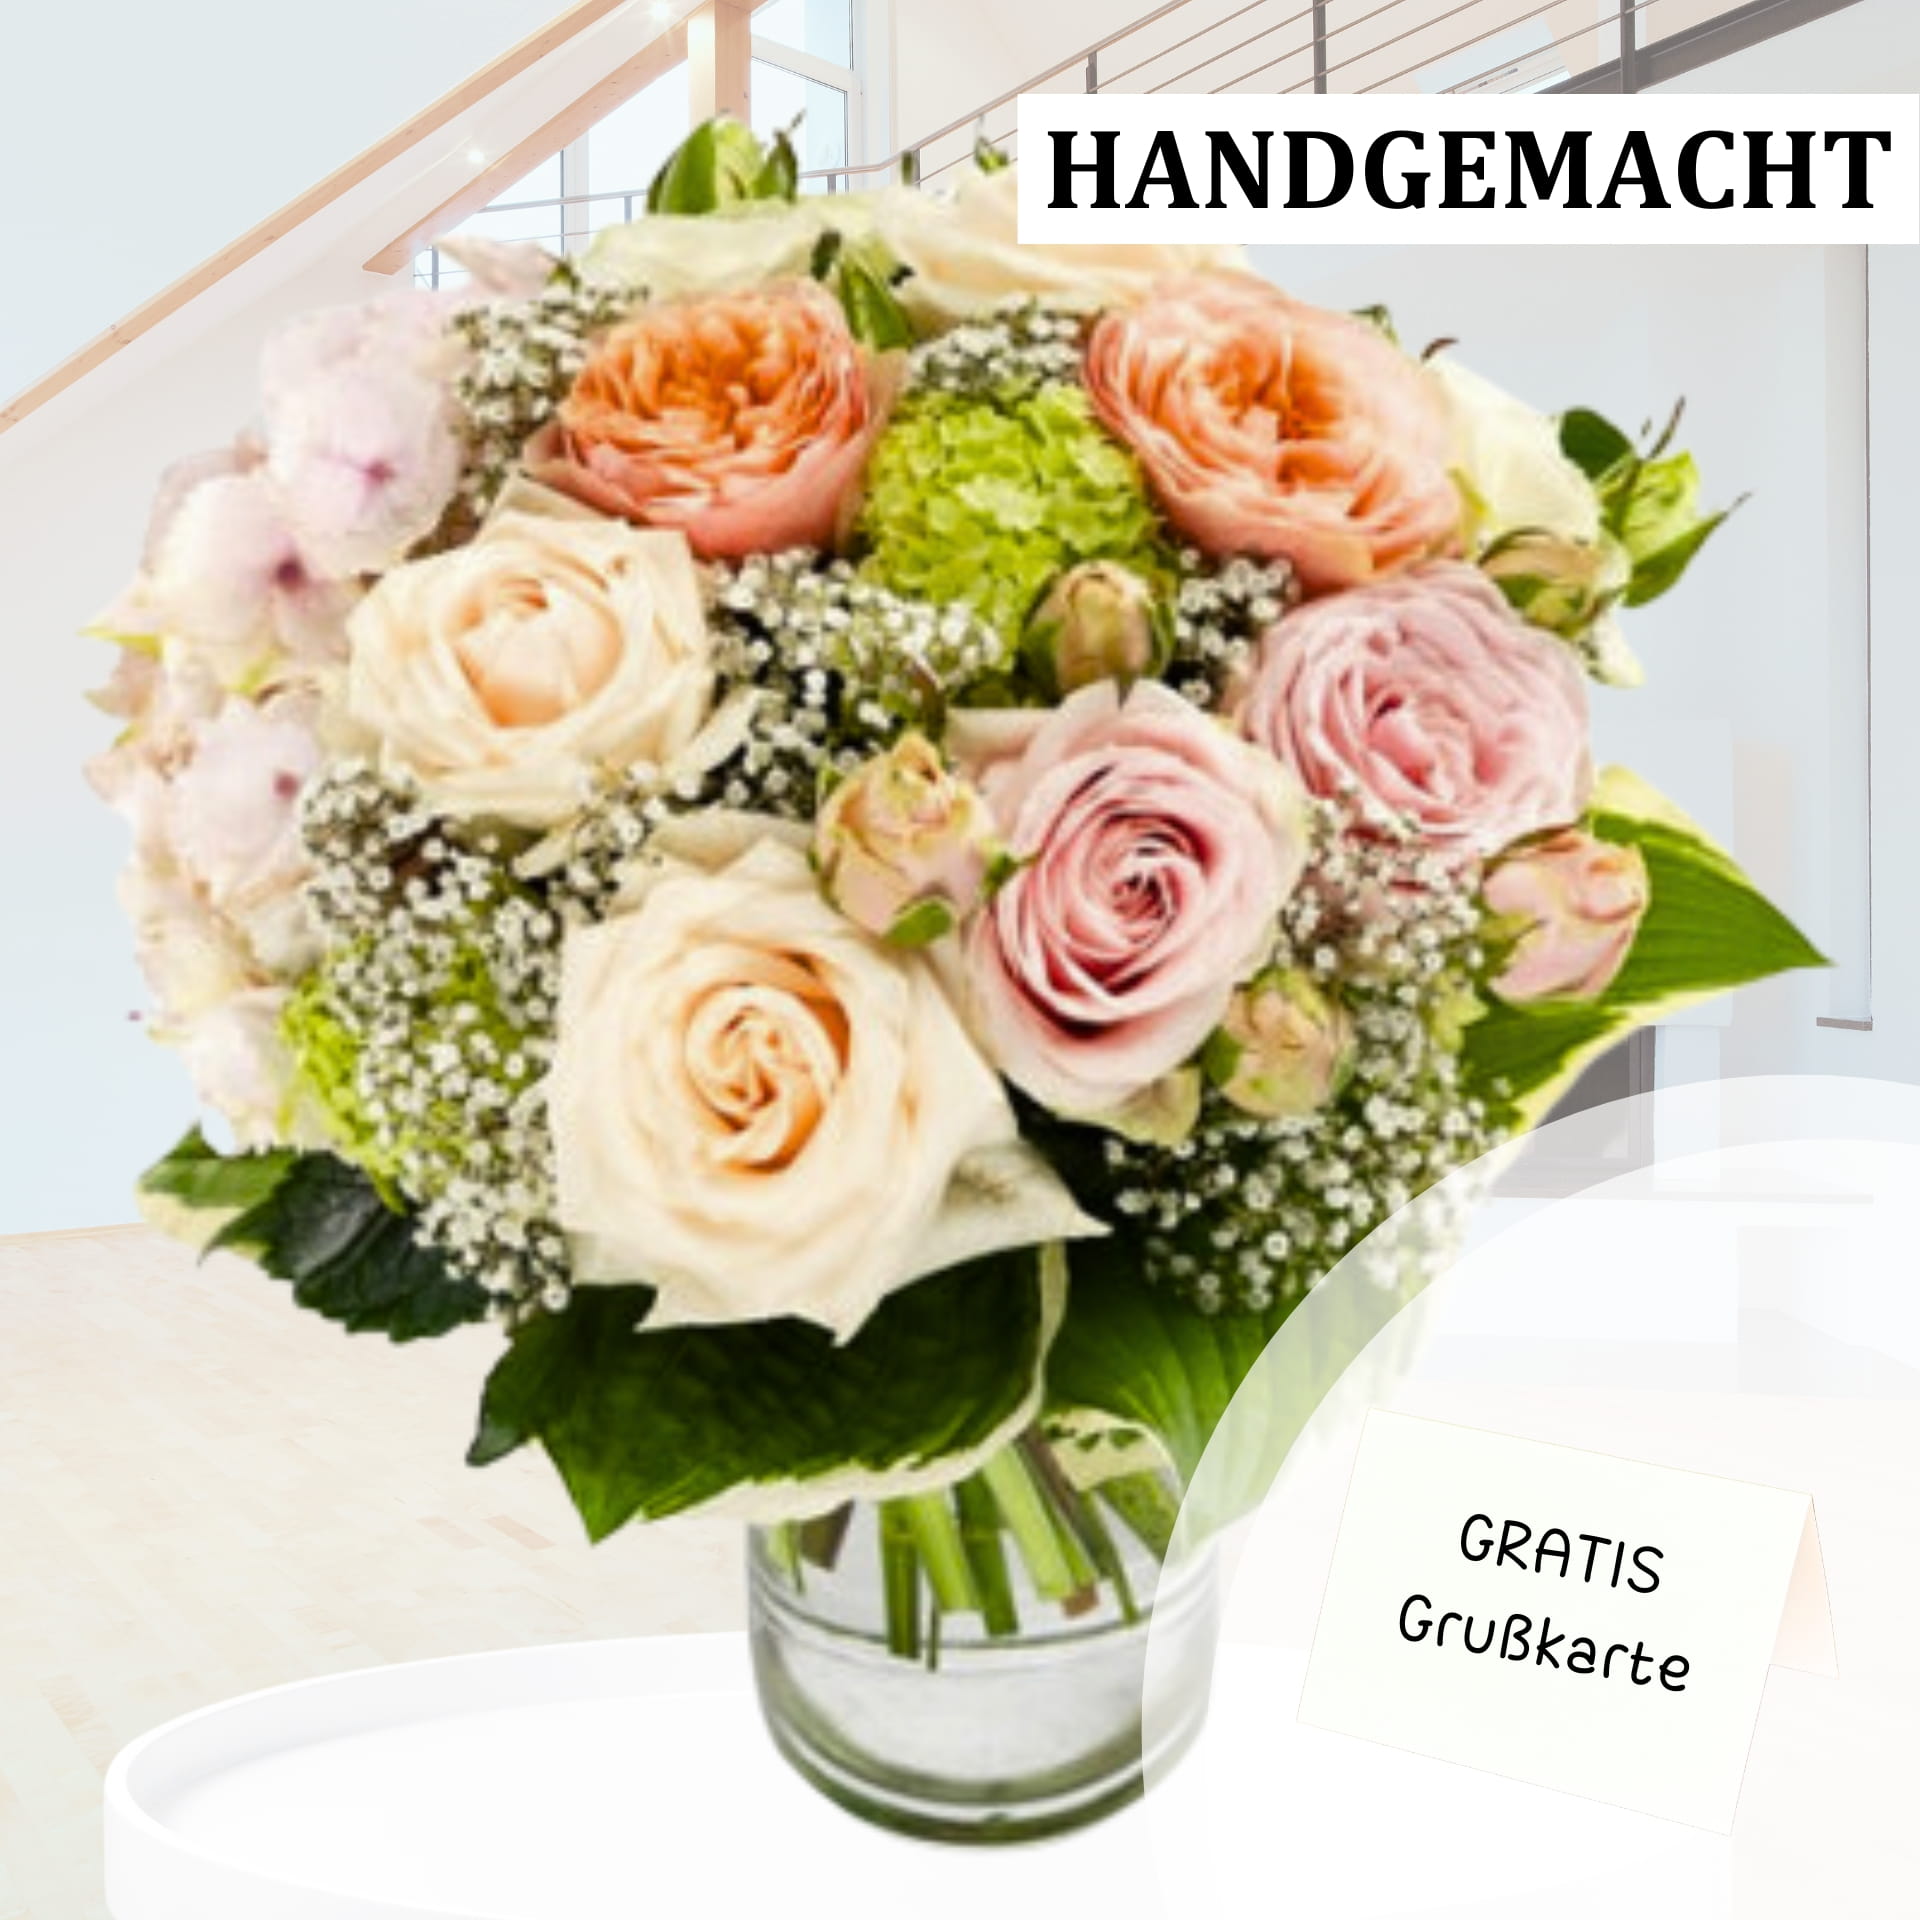 Ein handgemachter Blumenstrauß mit verschiedenen Rosen in Pastellfarben, darunter Rosa, Pfirsich und Weiß, arrangiert mit grünem Laub und Schleierkraut in einer Glasvase. Oben rechts steht der Text "HANDGEMACHT" und unten rechts "GRATIS Grußkarte".